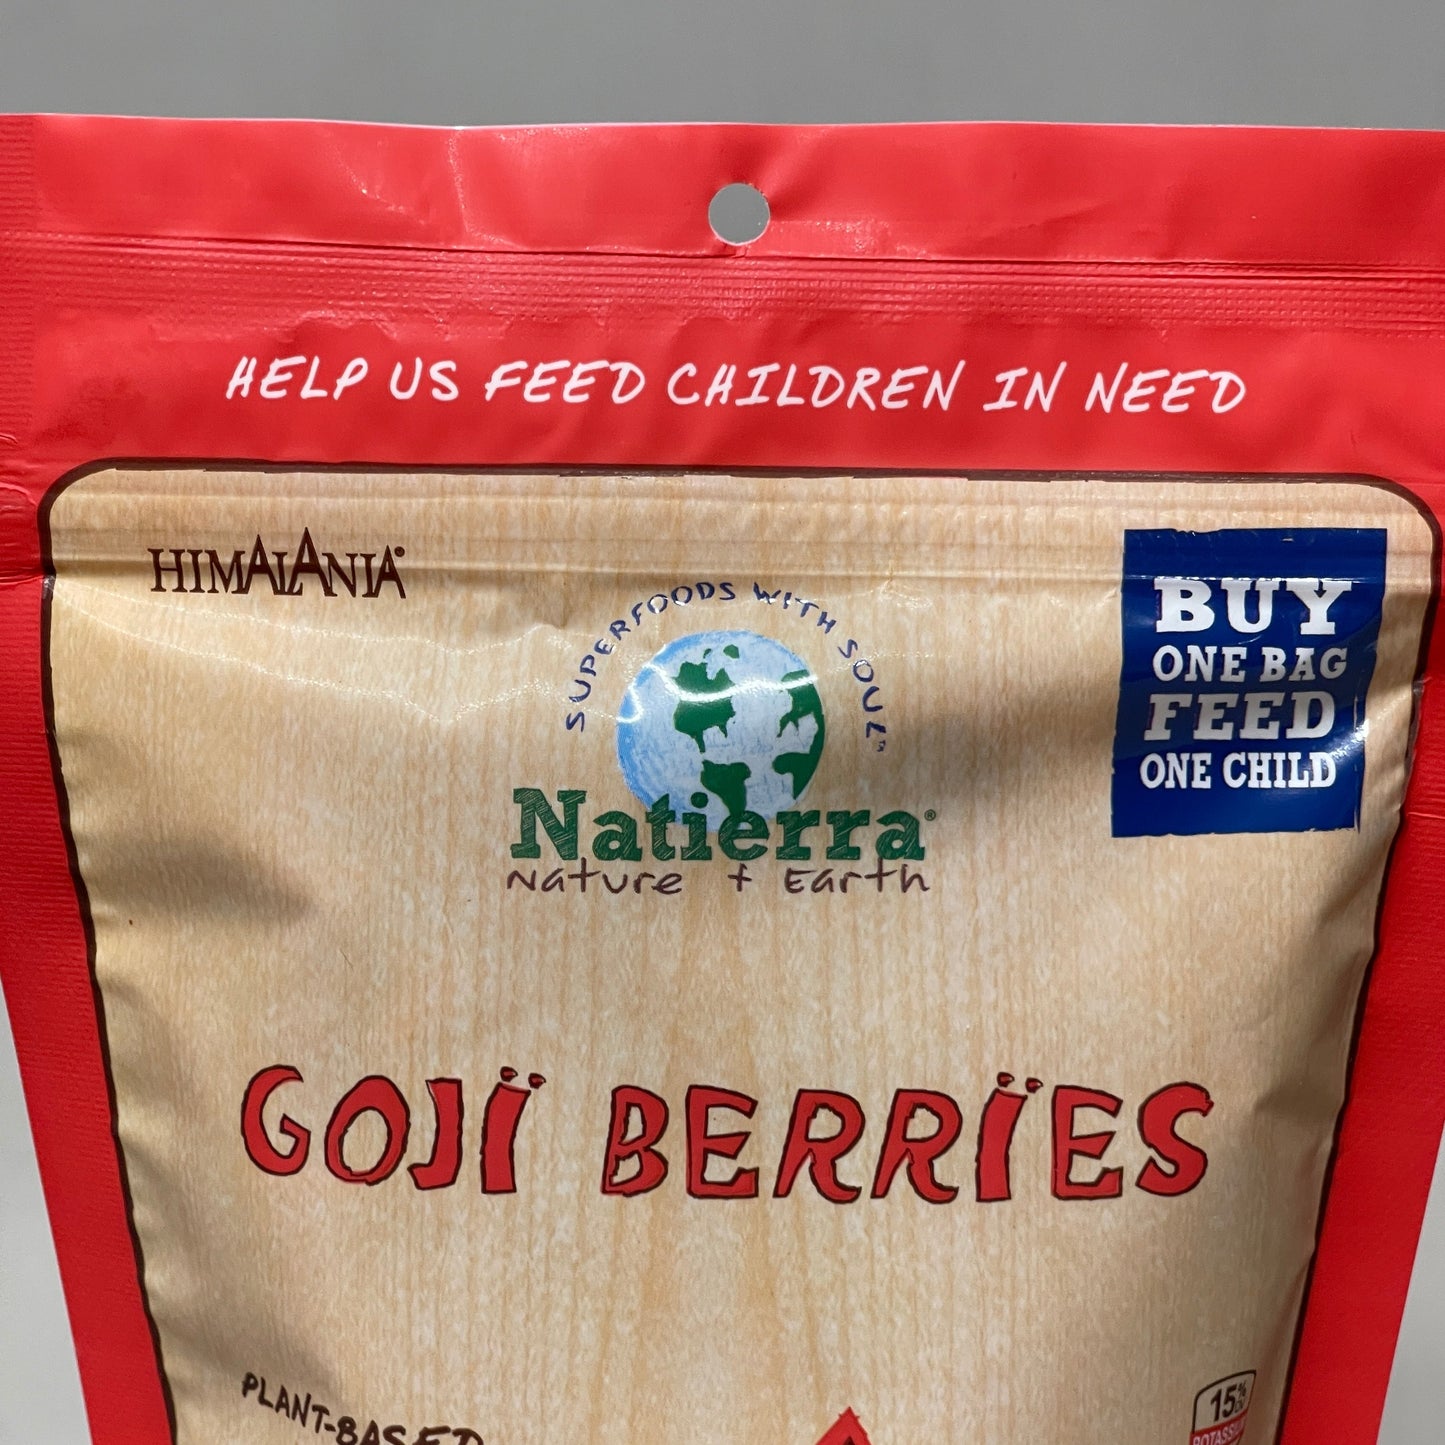 NATIERRA 3PK Nature & Earth Goji Berries Super Food Snack 8 oz (New)